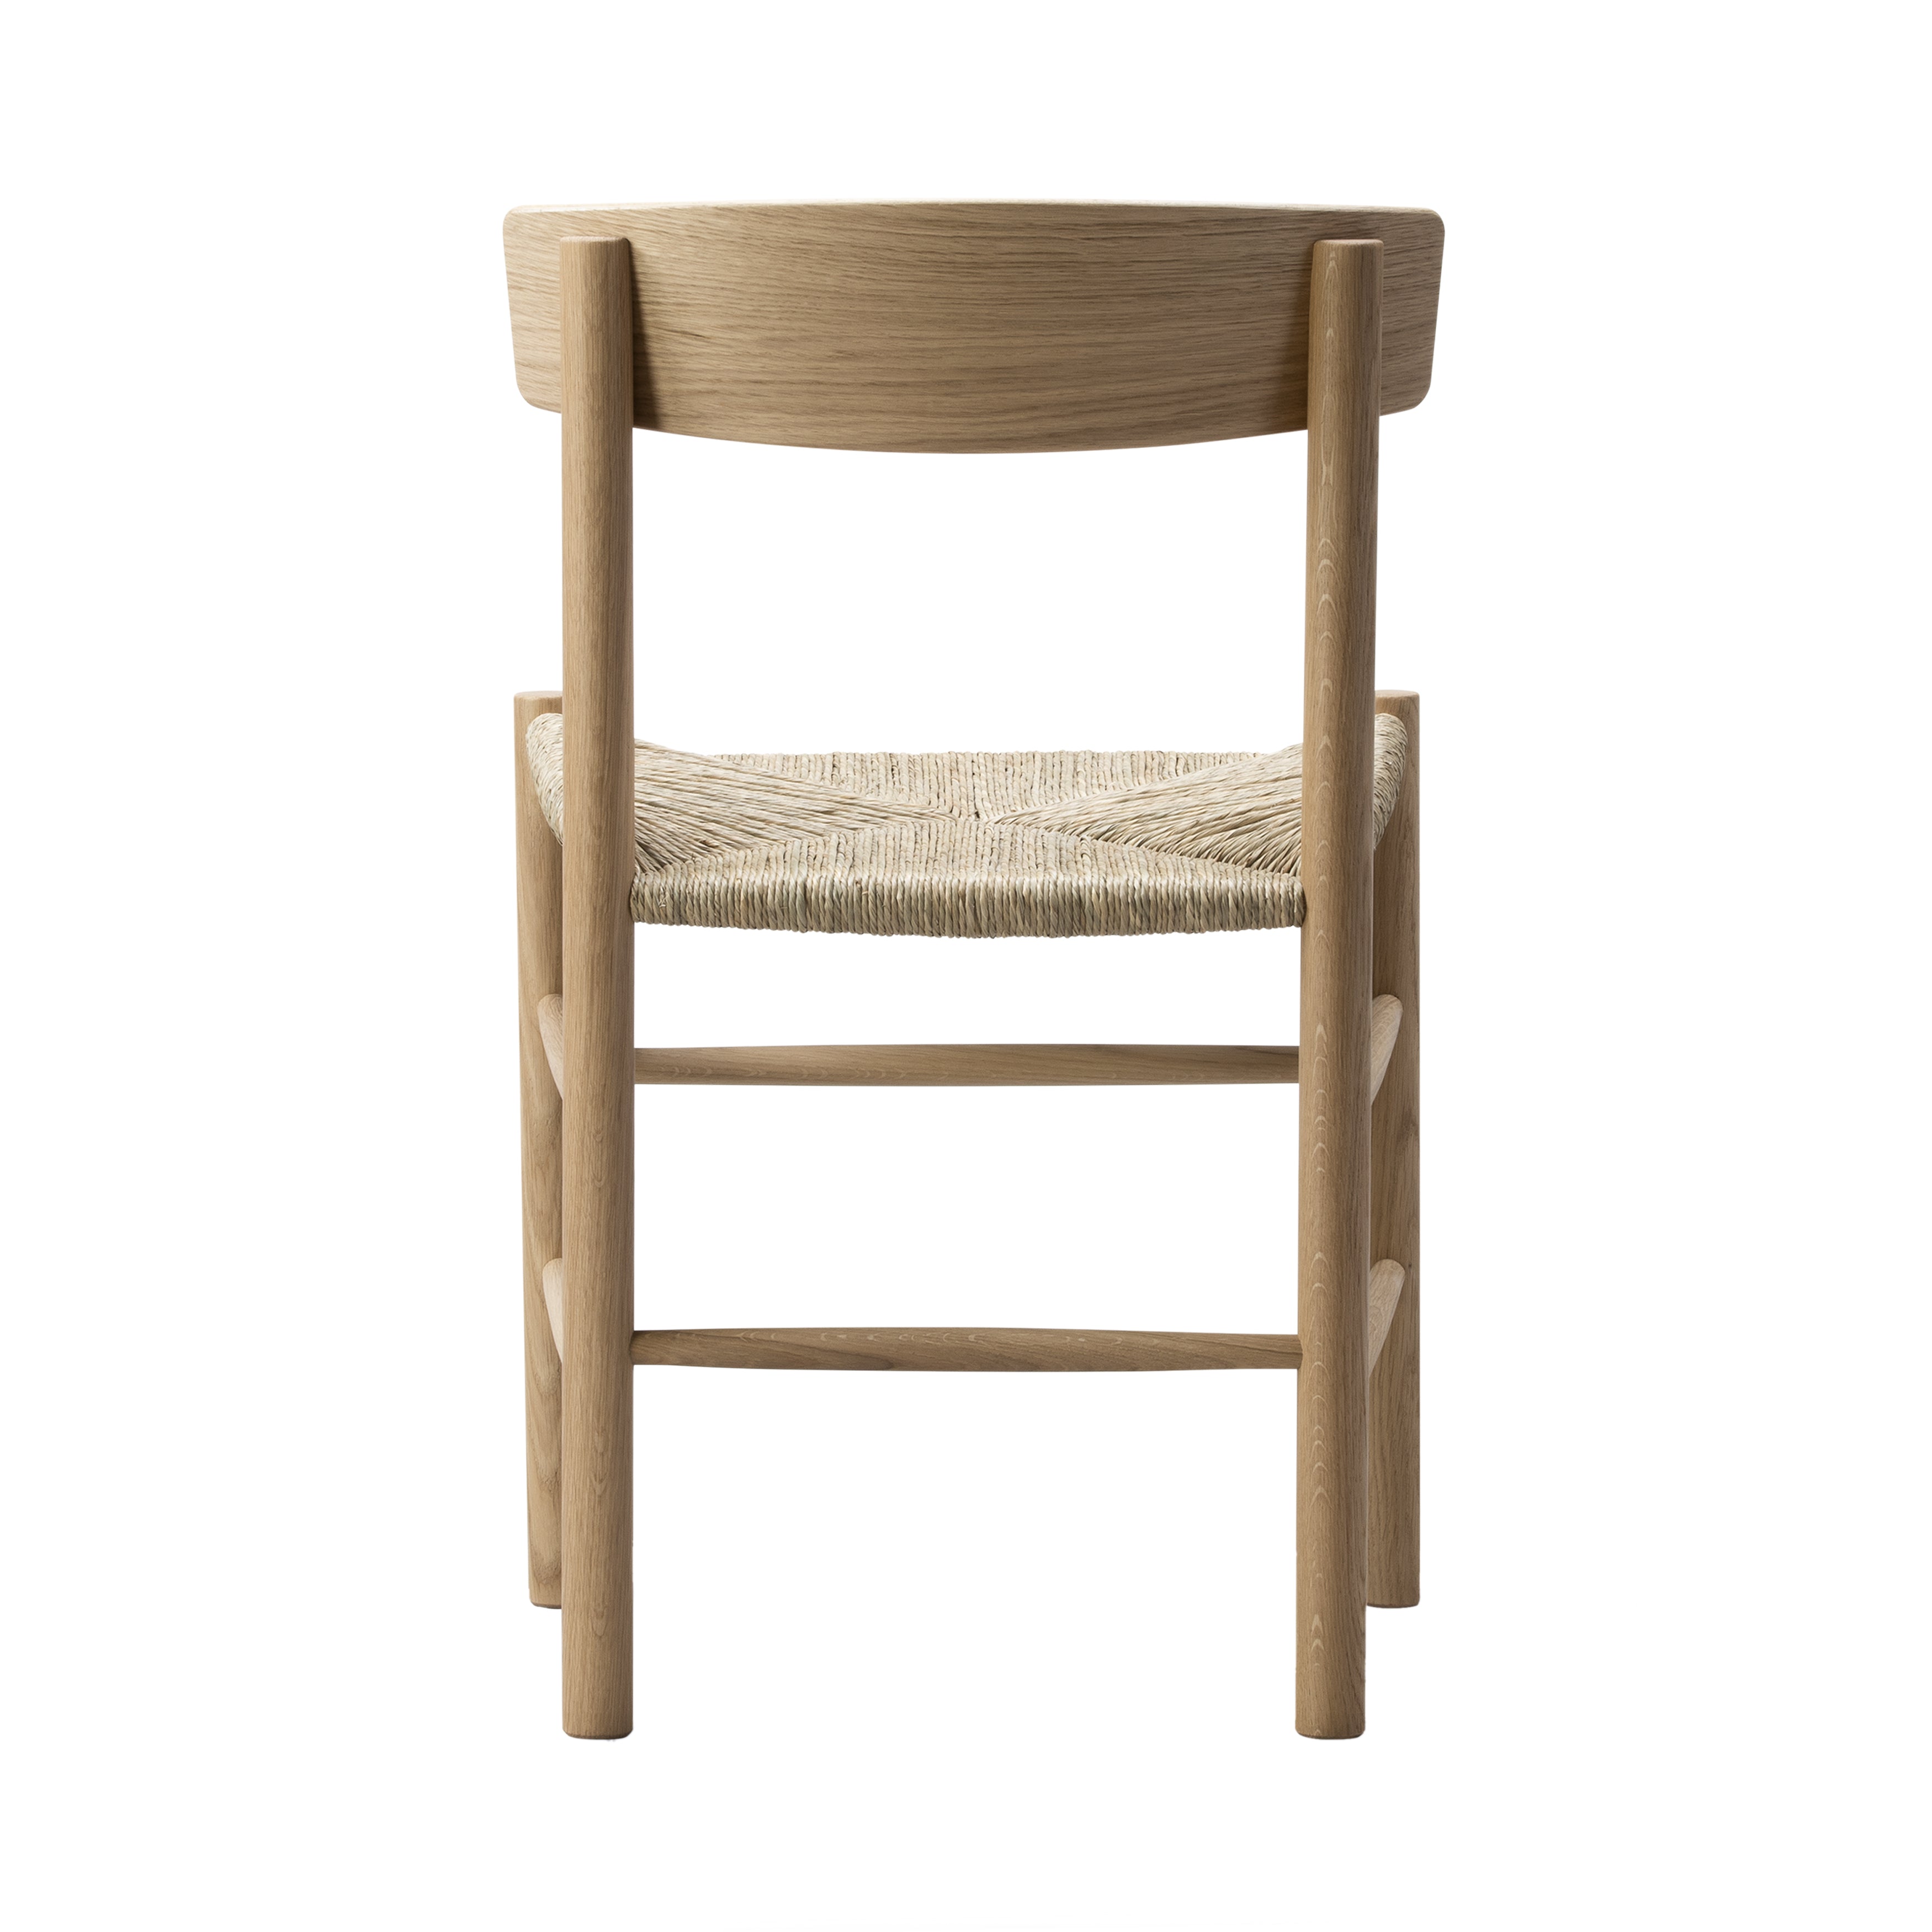 J39 Mogensen Chair: Light Oiled Oak + Natural